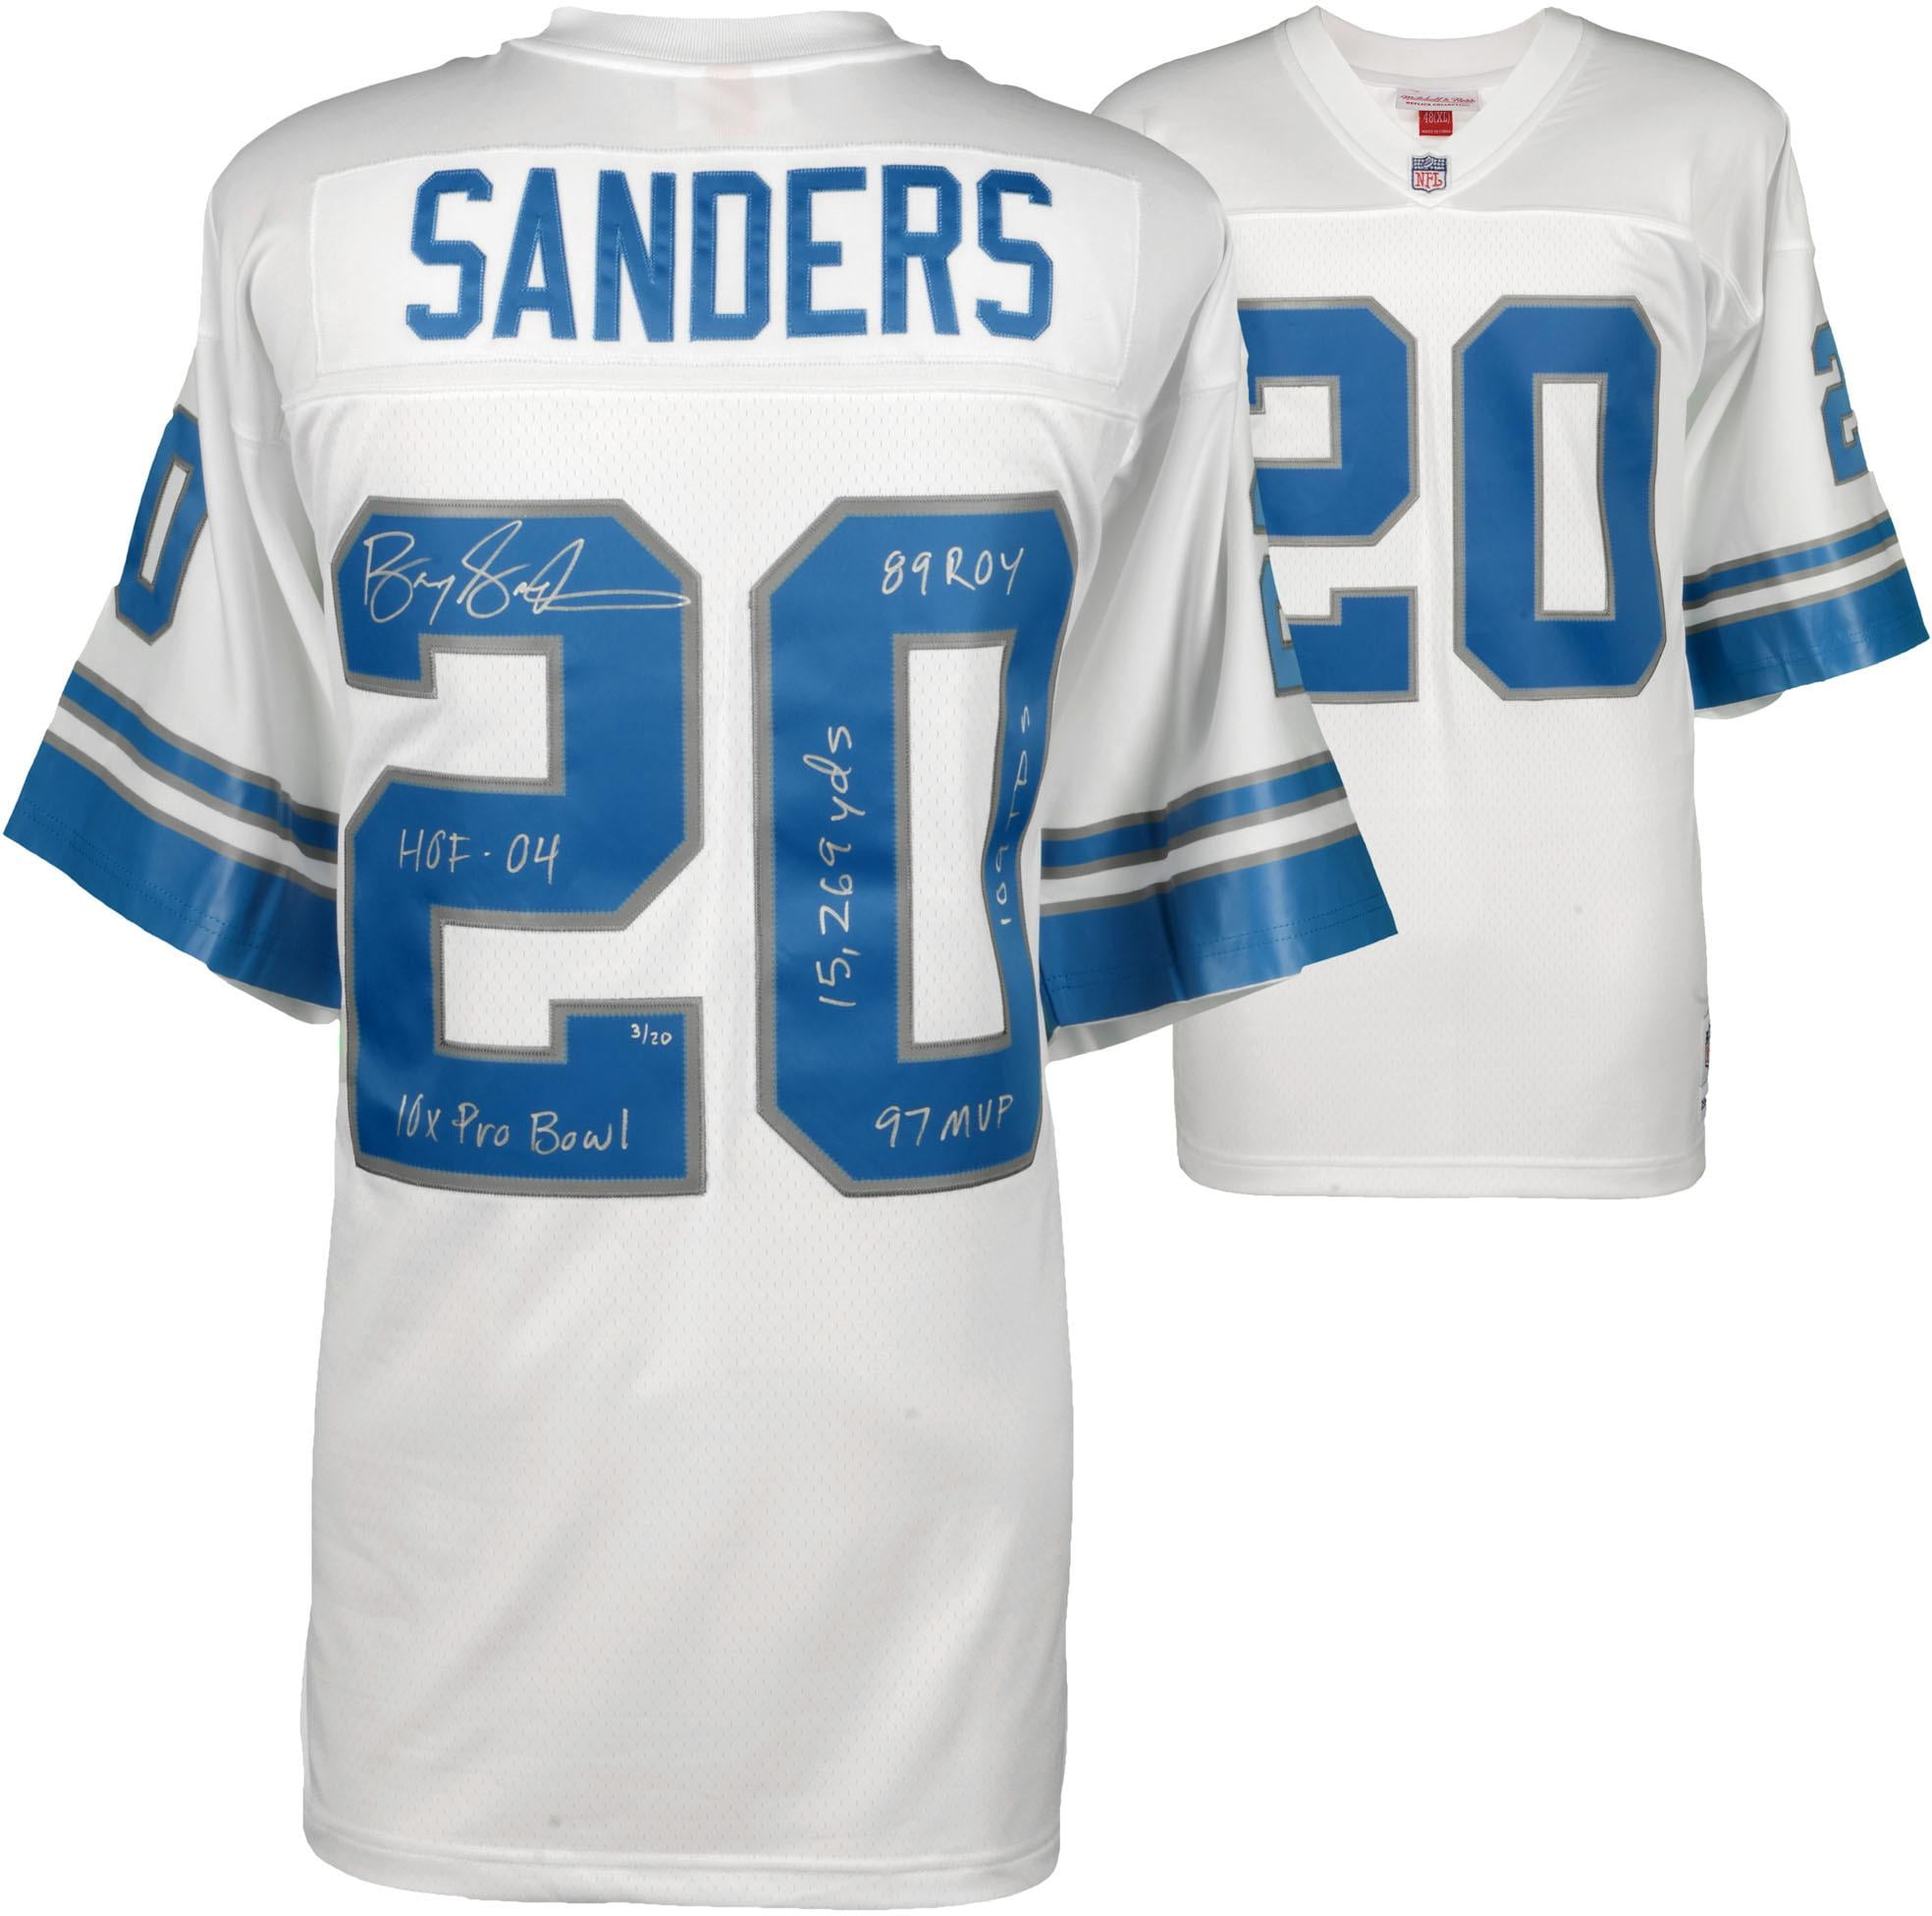 sanders jersey 20